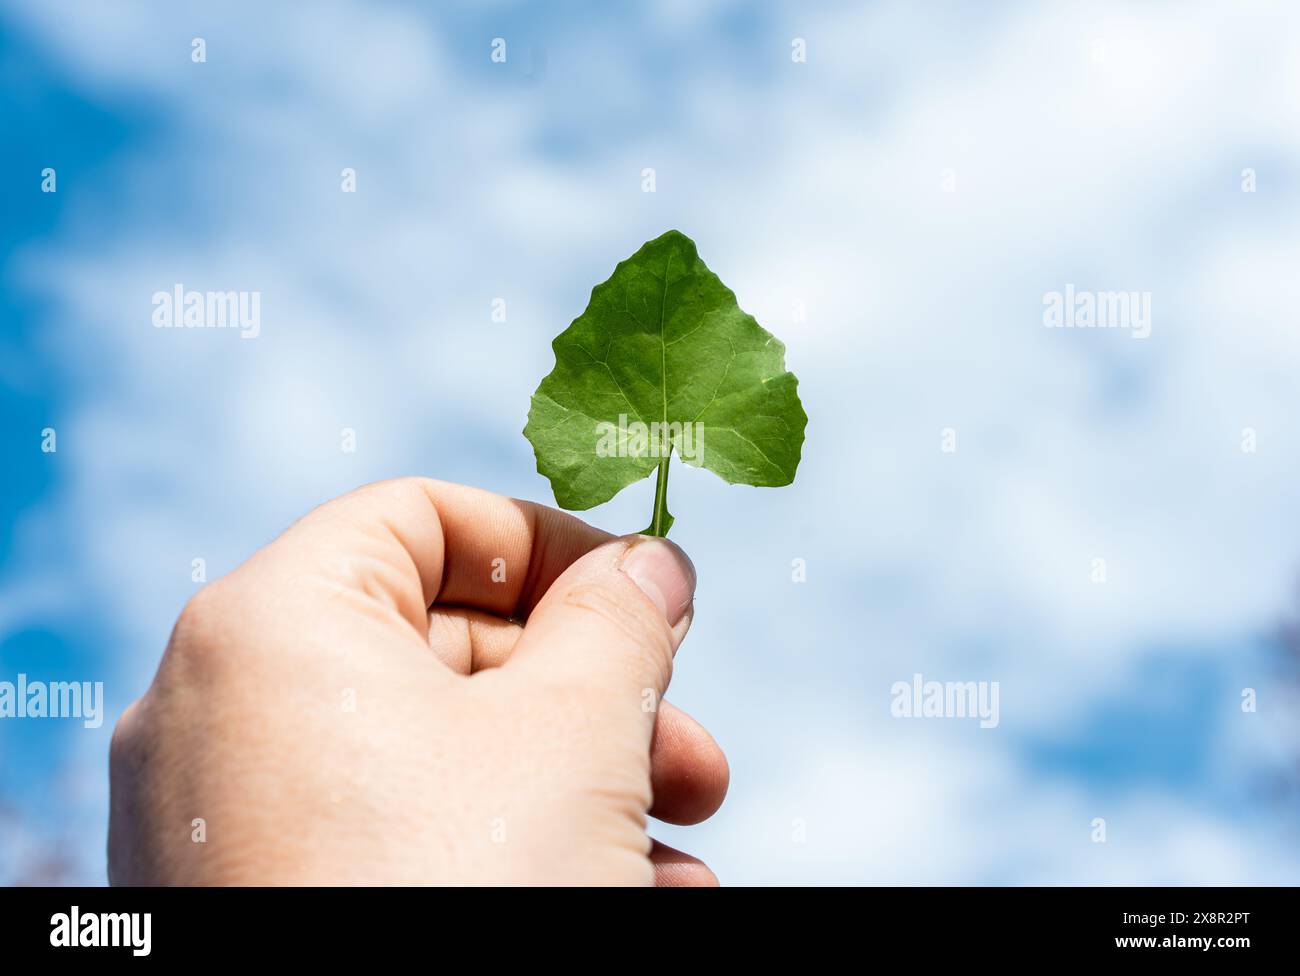 Nahaufnahme einer Hand, die ein grünes Blatt vor blauem Himmel hält. Dieses Bild betont die Natur, das Umweltbewusstsein und die Umweltfreundlichkeit Stockfoto